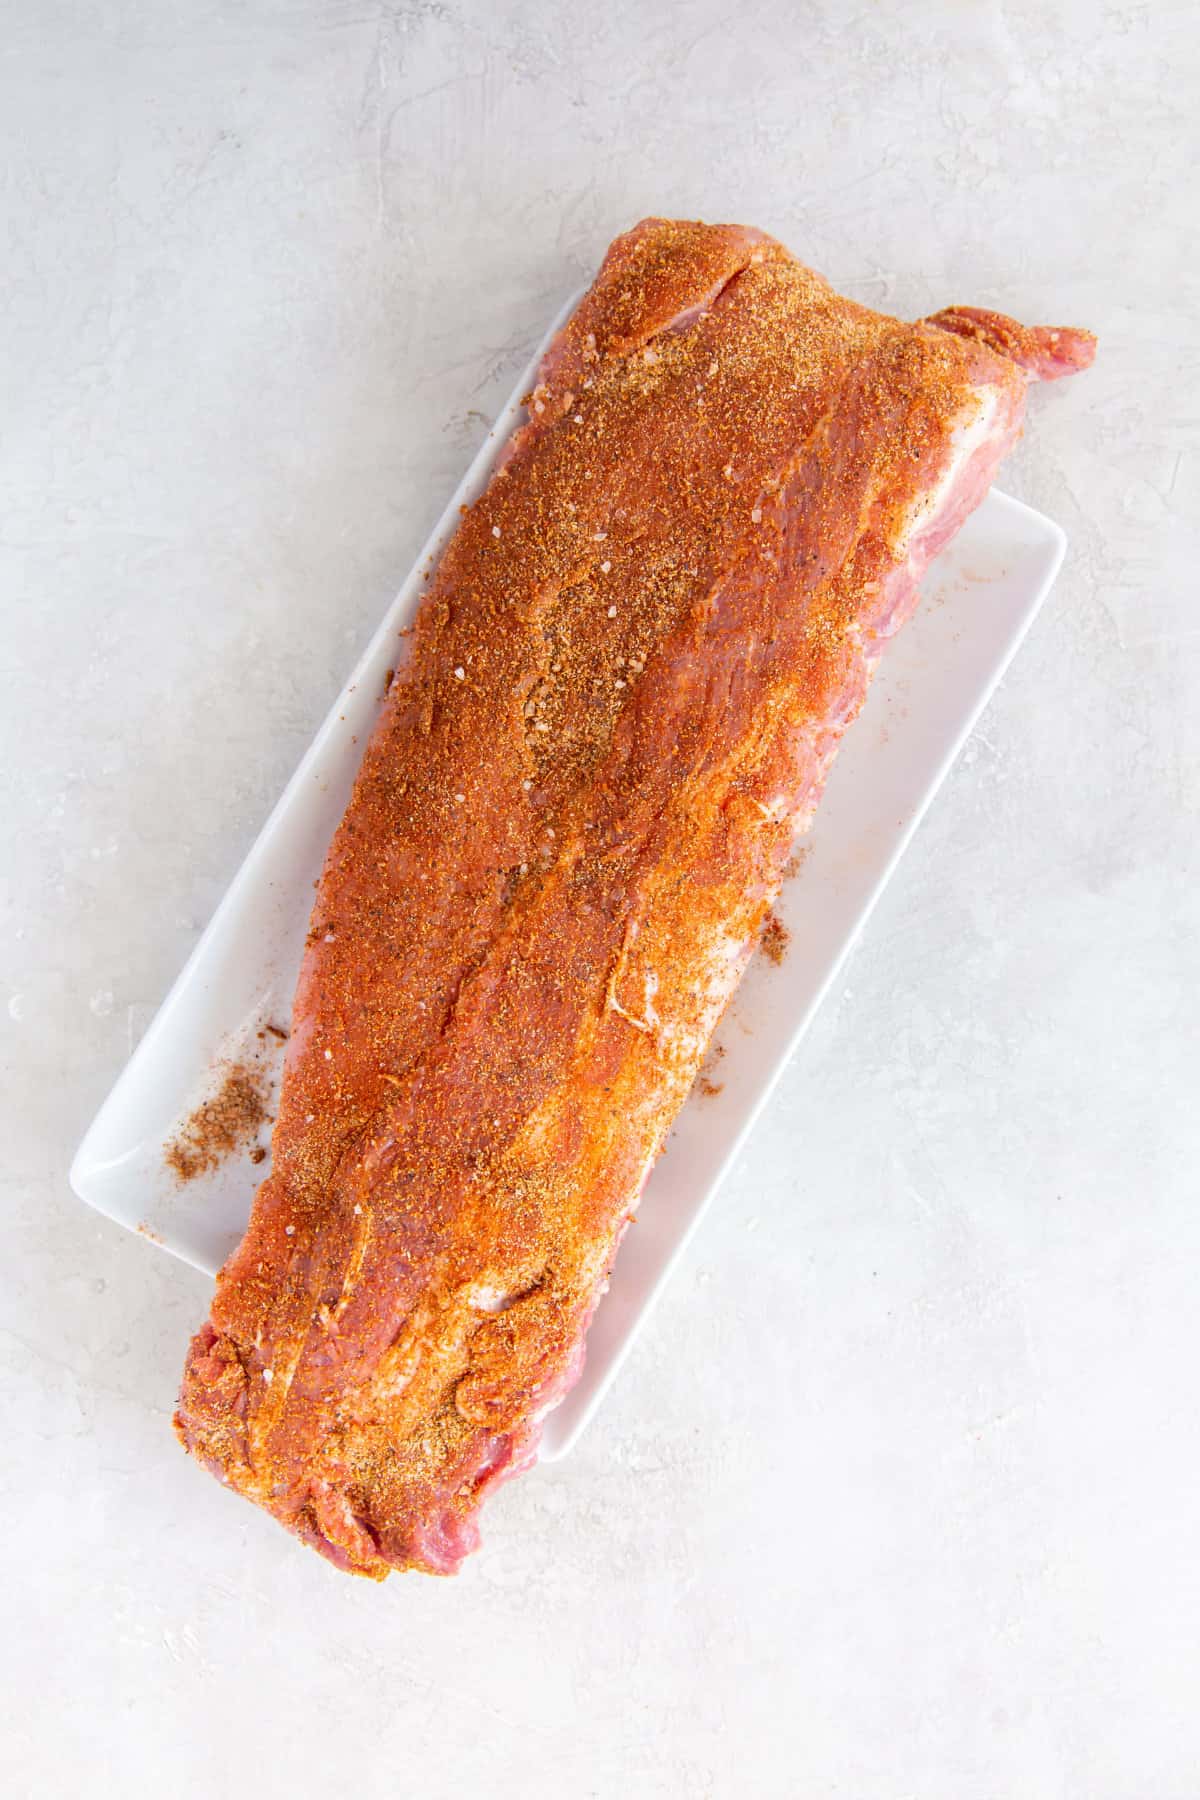 rib rub spread over raw pork ribs.